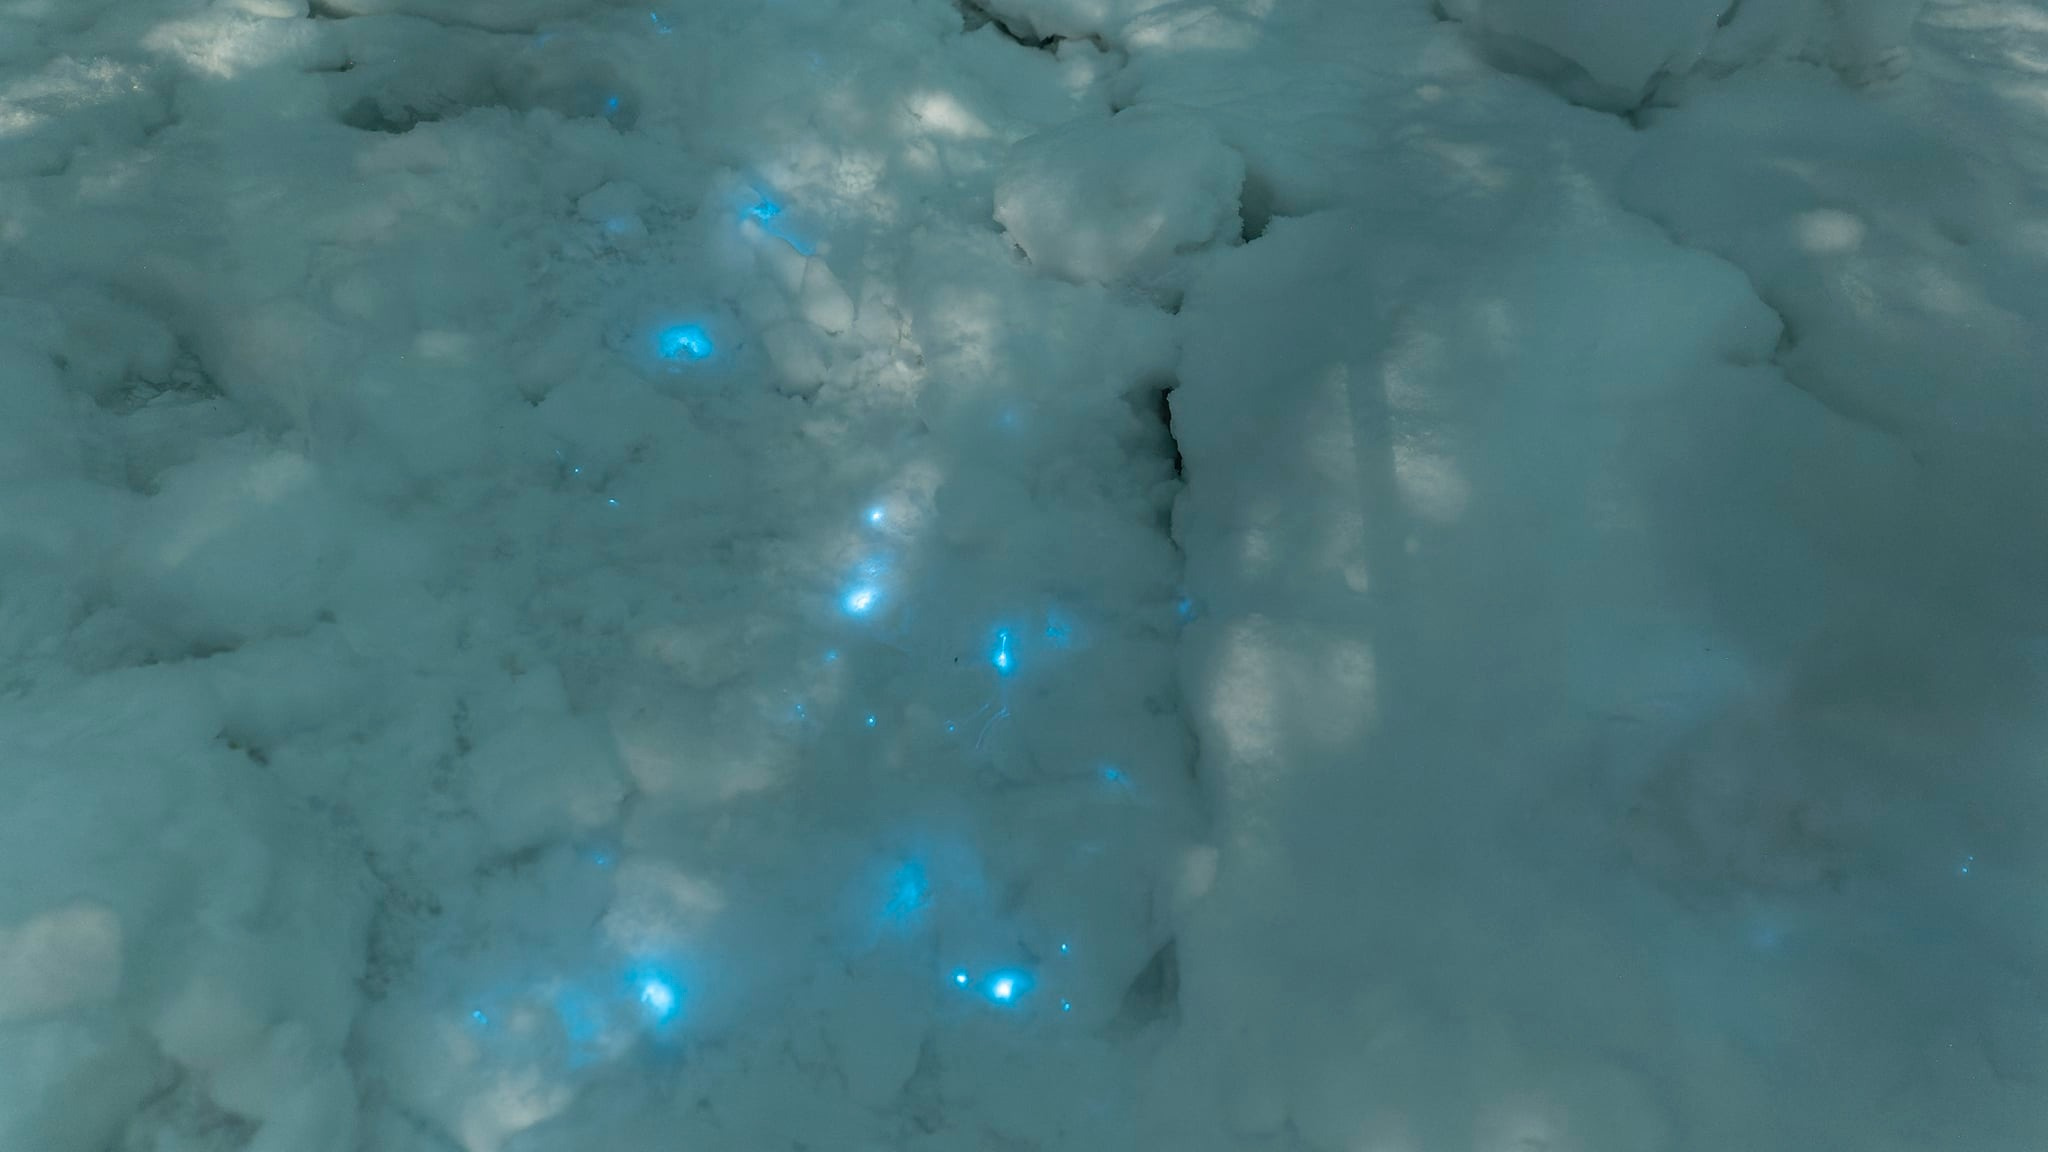 Вселенная под ногами. Фотограф снял снег с живыми огоньками на берегу Белого моря — что это такое